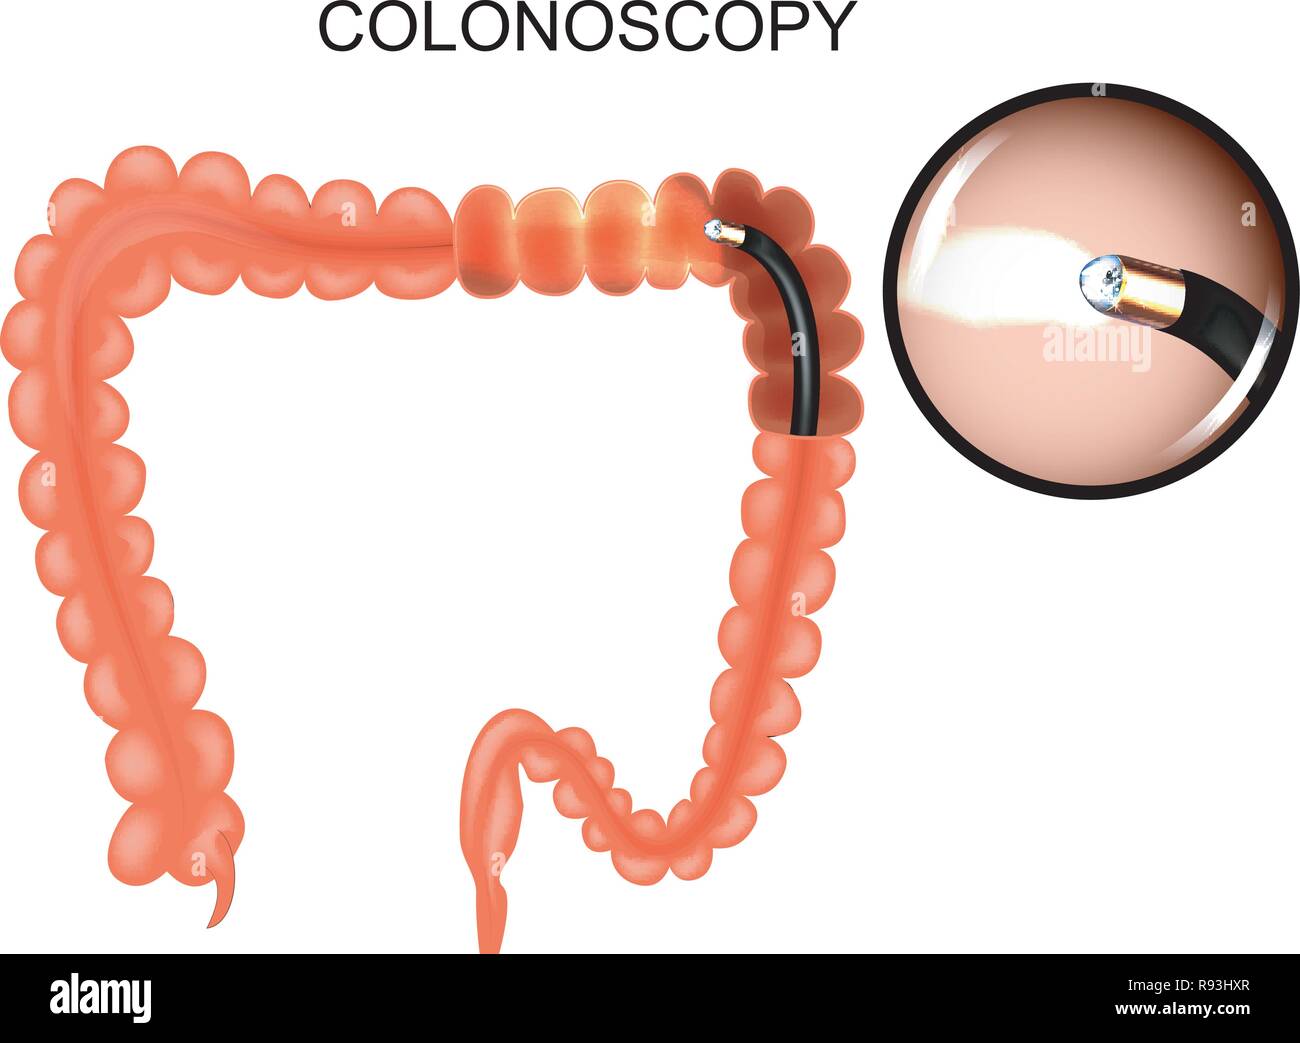 Illustrazione vettoriale di intestino crasso, colonoscop medicina. Illustrazione Vettoriale